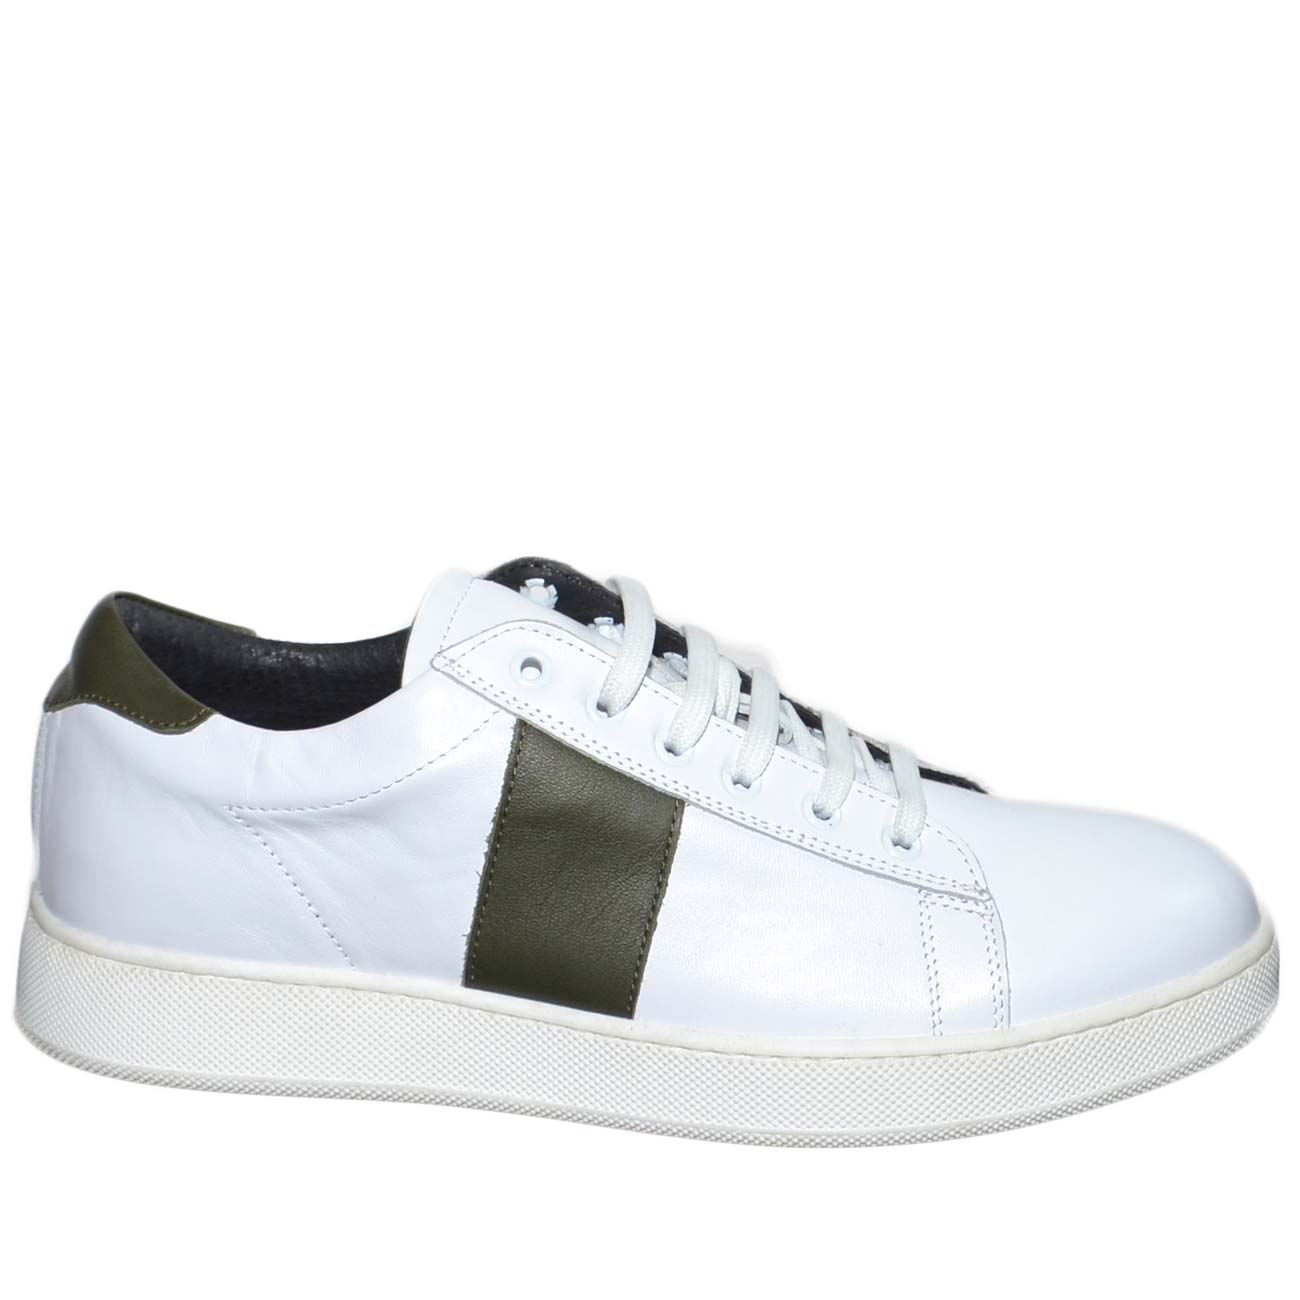 Sneakers bassa in vera pelle morbida bianca con striscia trasversale verde miltare e fortino in tinta fondo antistrecht.